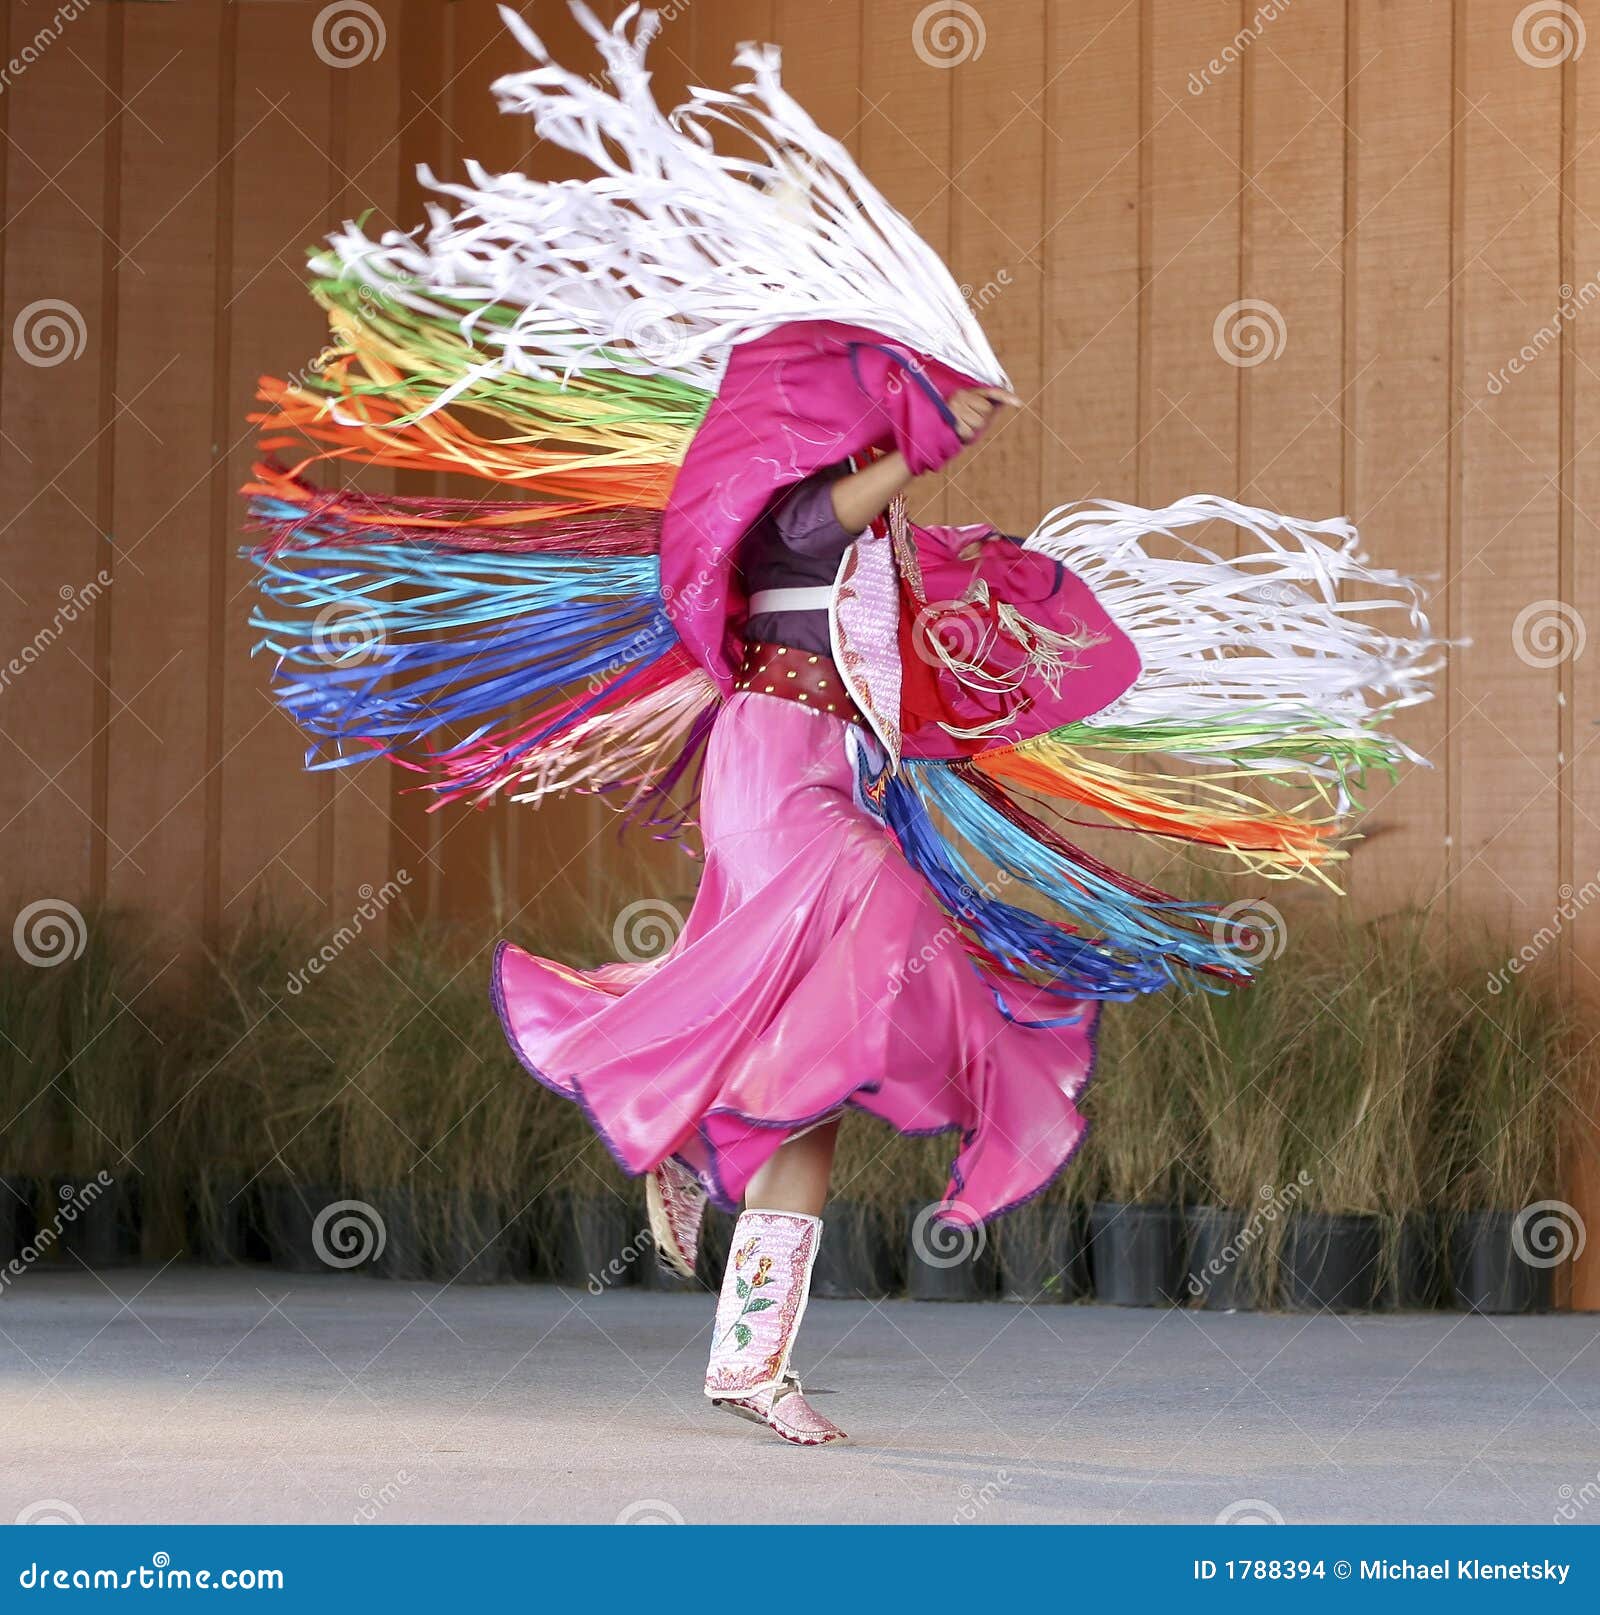 native american dancing